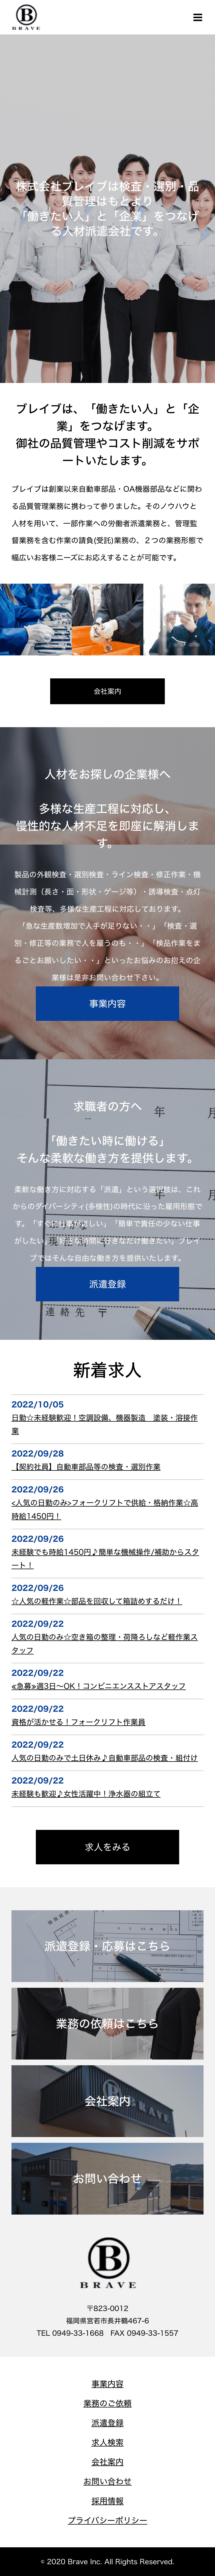 株式会社ブレイブ様 mobile image